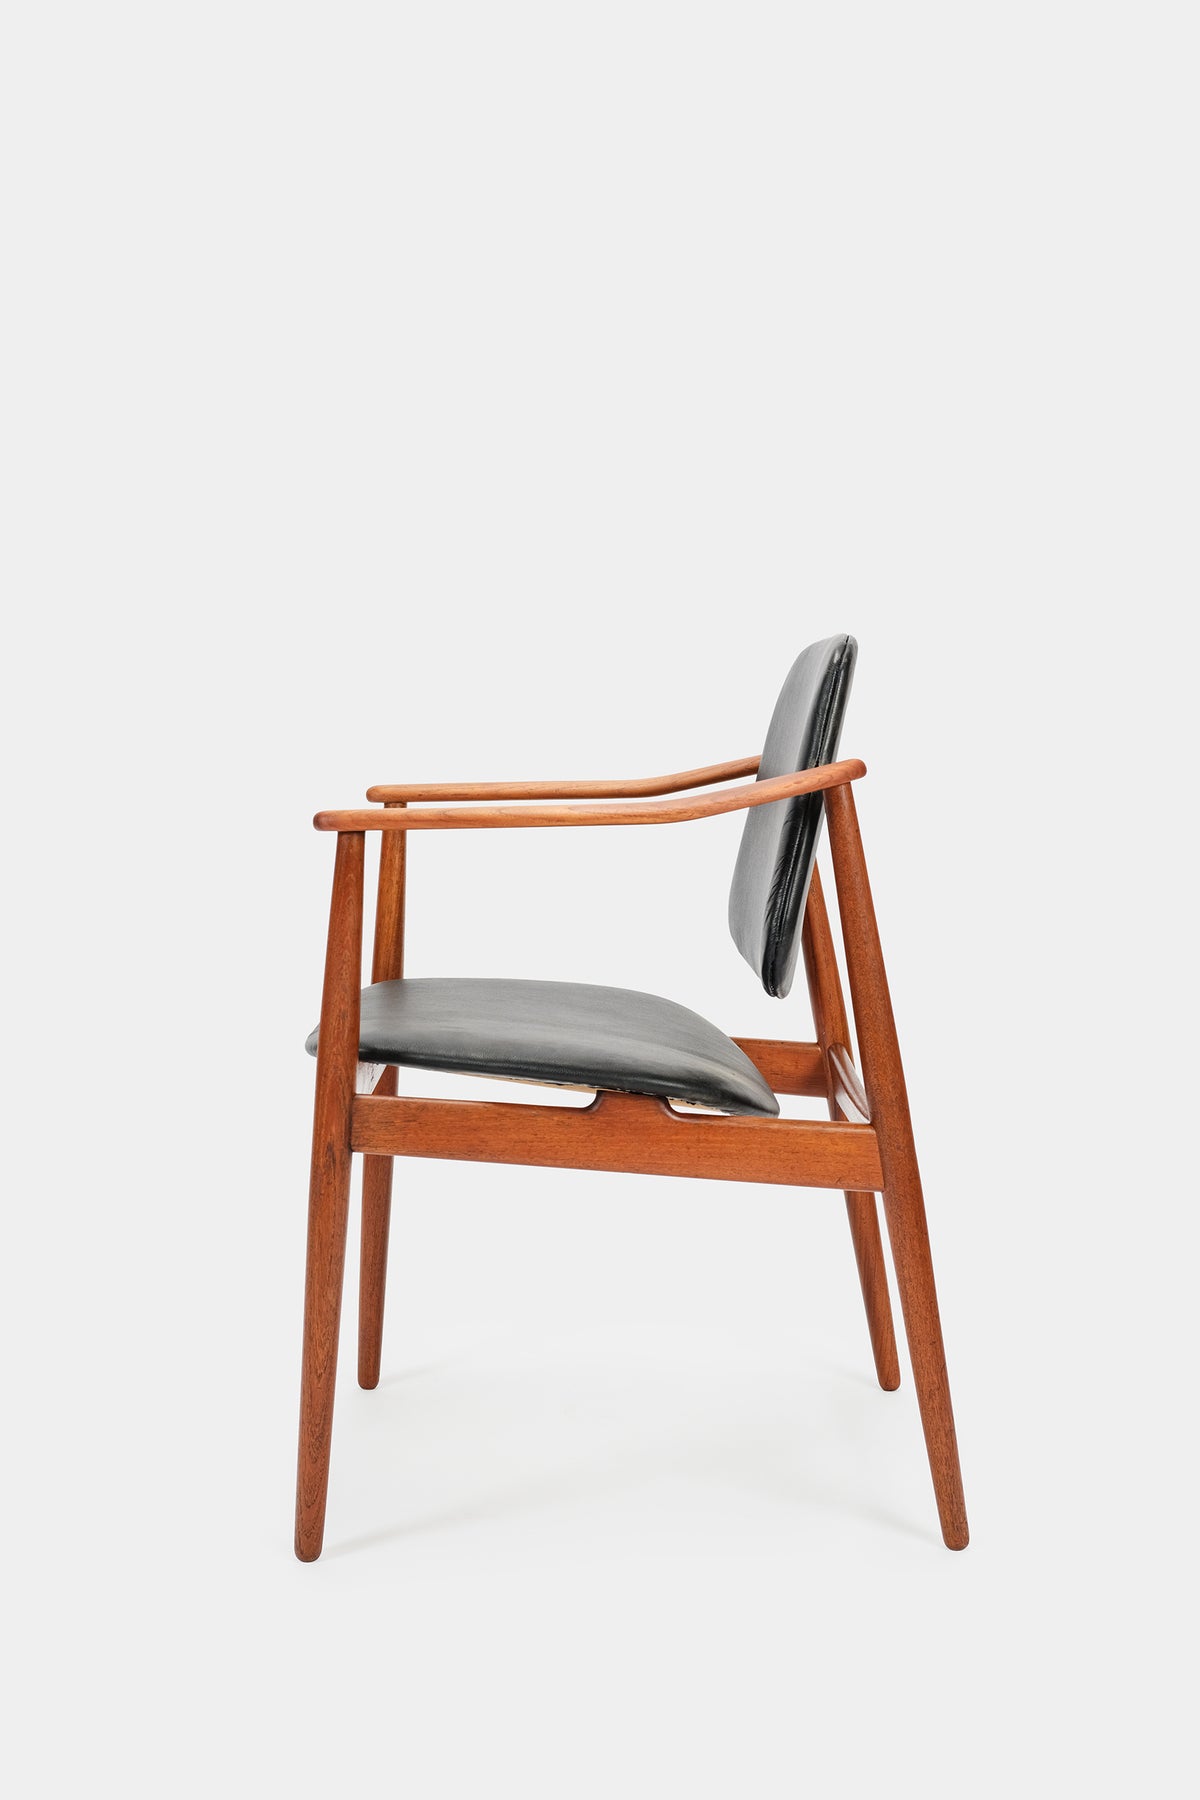 Arne Vodder chair Bovirke, new leather, 50s